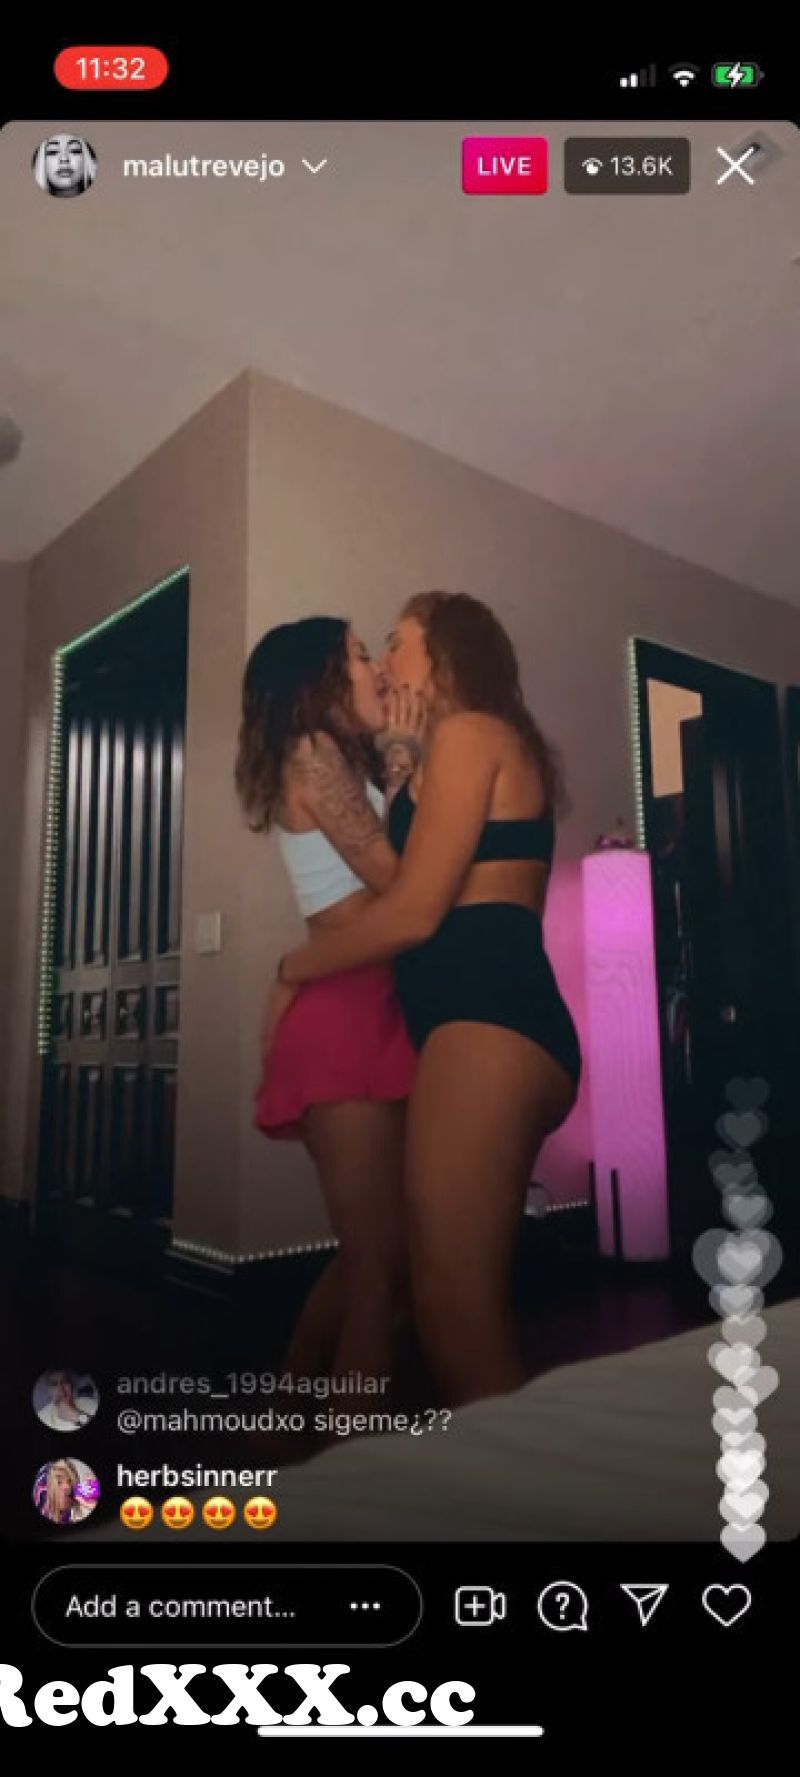 Malu trevejo onlyfans kissing video leaked